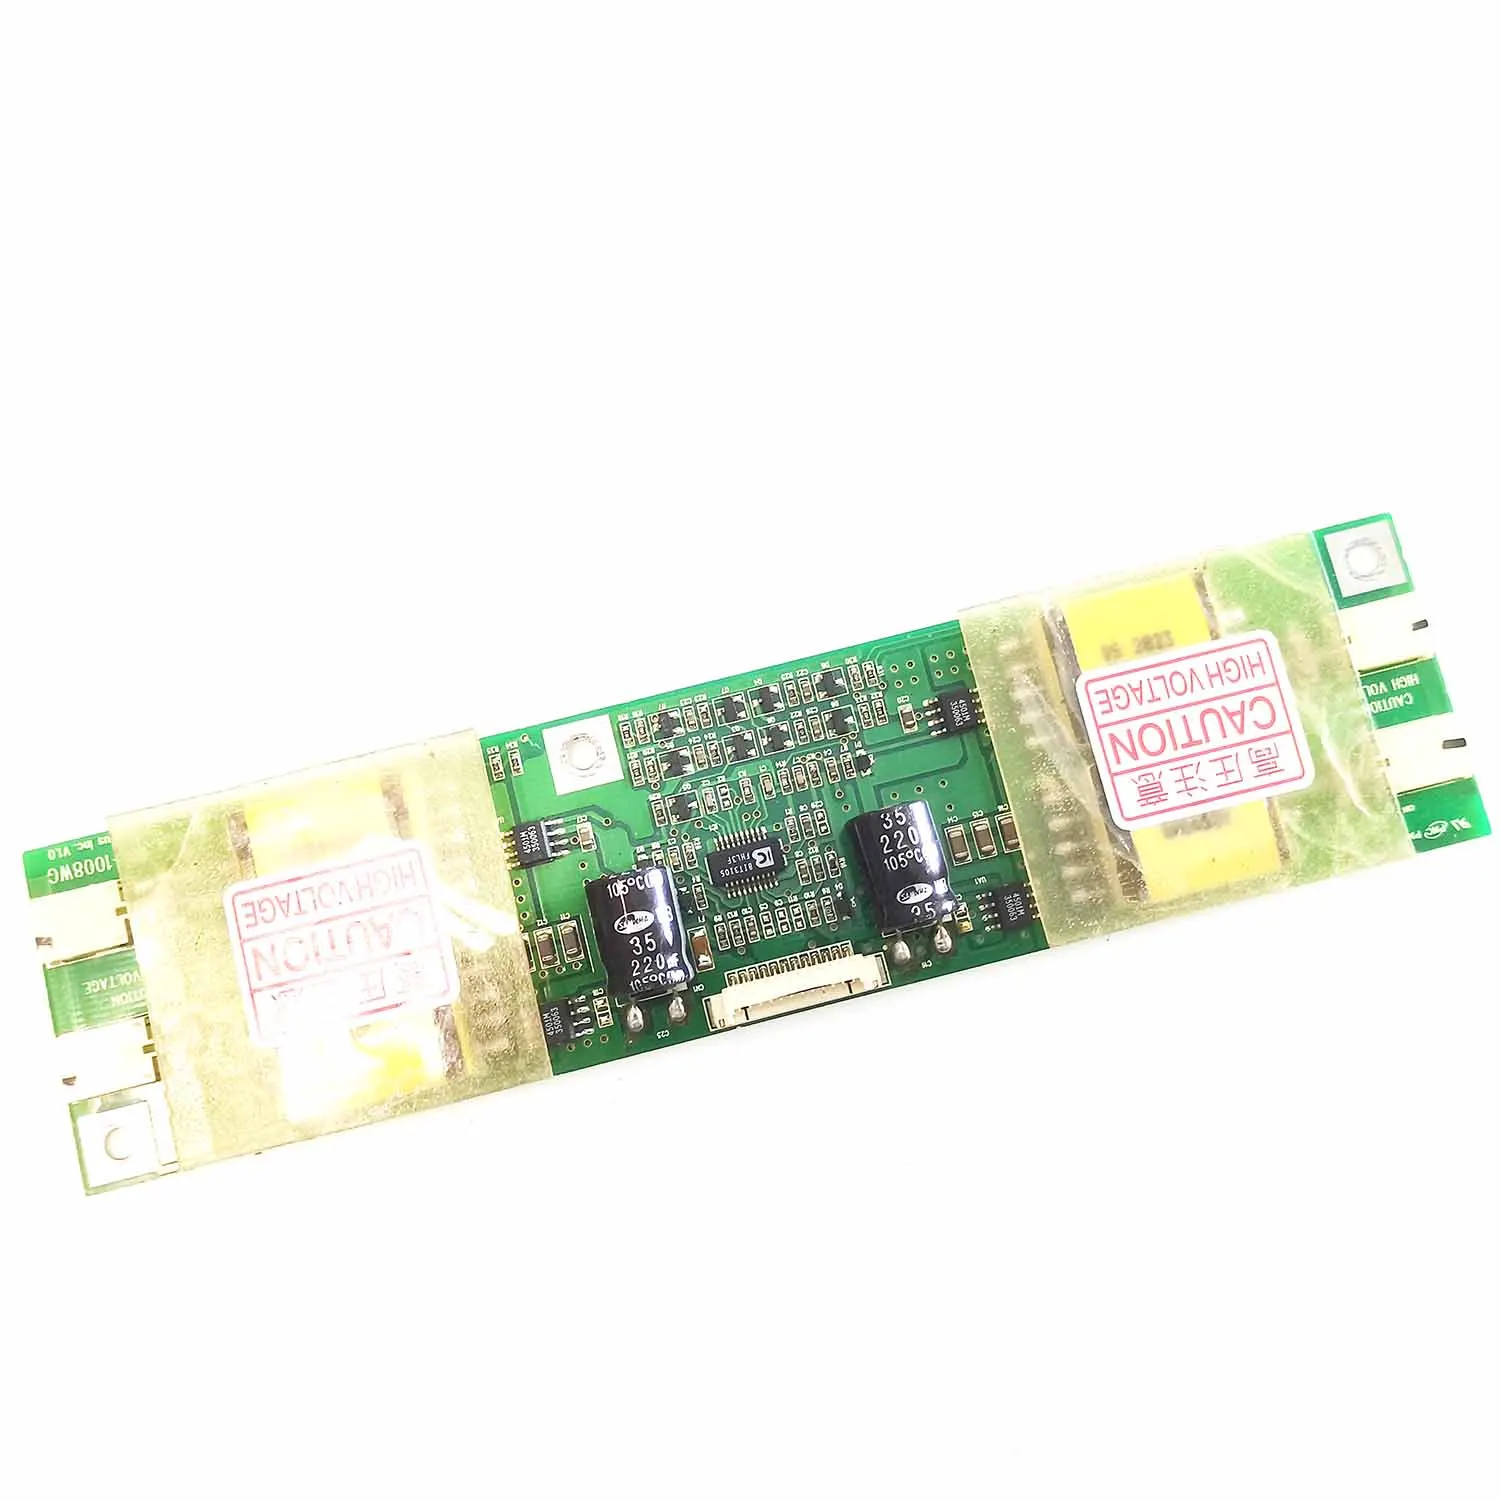 

High voltage bar PNC I DS-1008WG DS-Plus Inc. V1.0 inverter